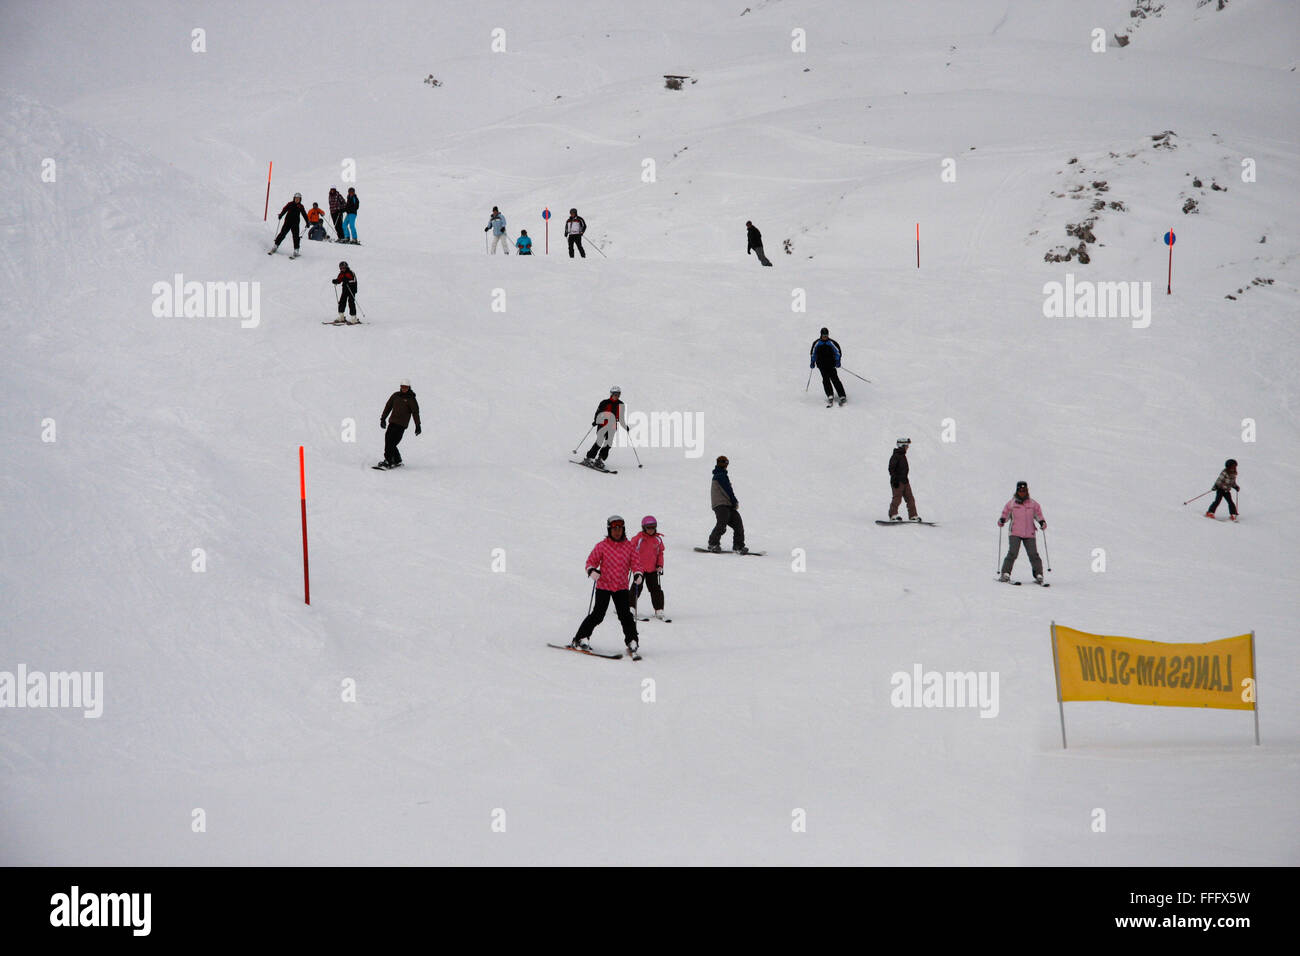 Ski alpin auf dem Nebelhorn, Winterstimmung, Oberstorf, Bayerische Alpen. Stock Photo